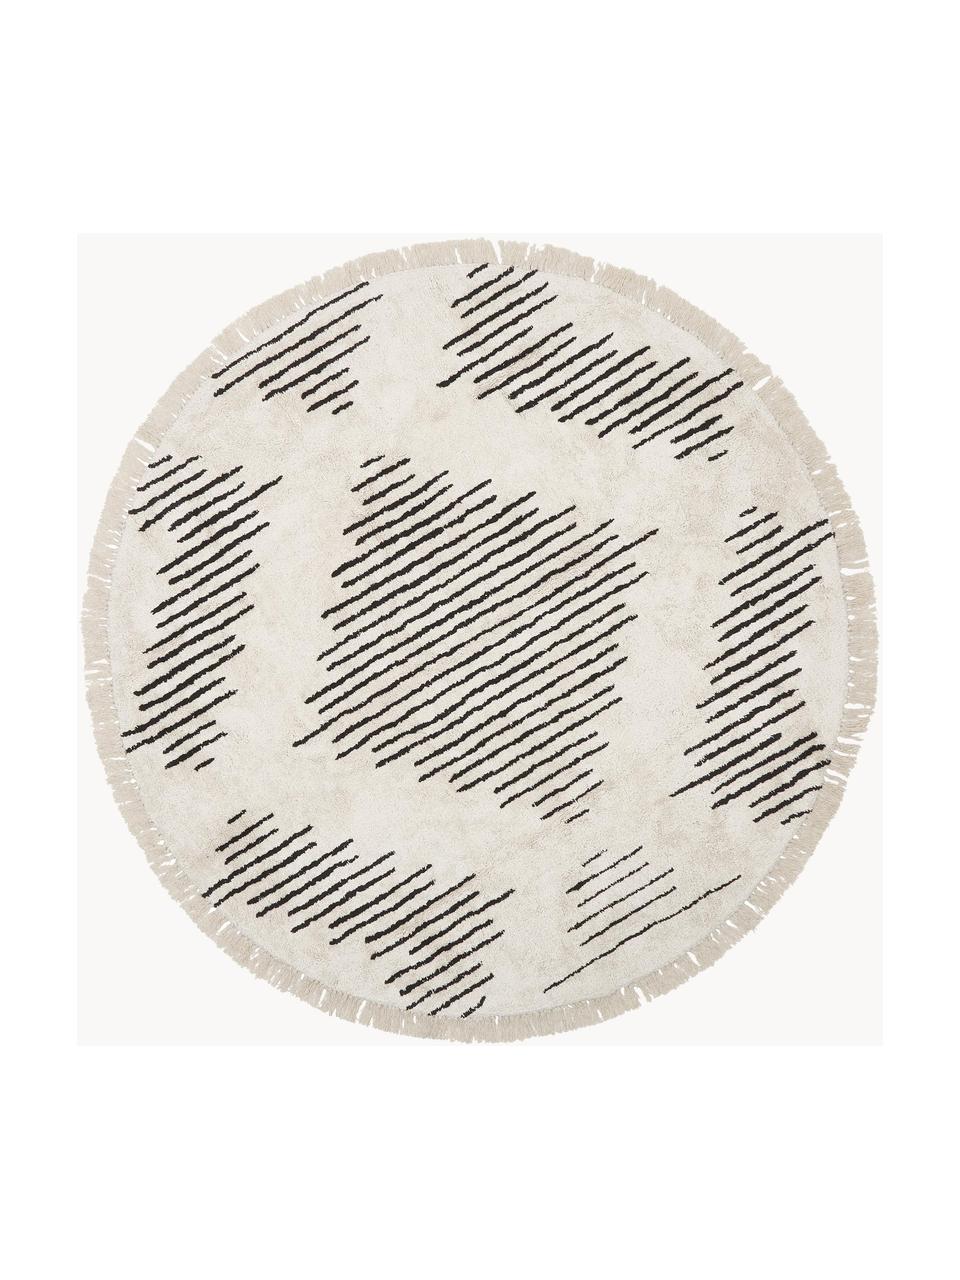 Tappeto rotondo in cotone tessuto a mano con frange Fini, 100% cotone, Beige, nero, Ø 150 cm (taglia M)